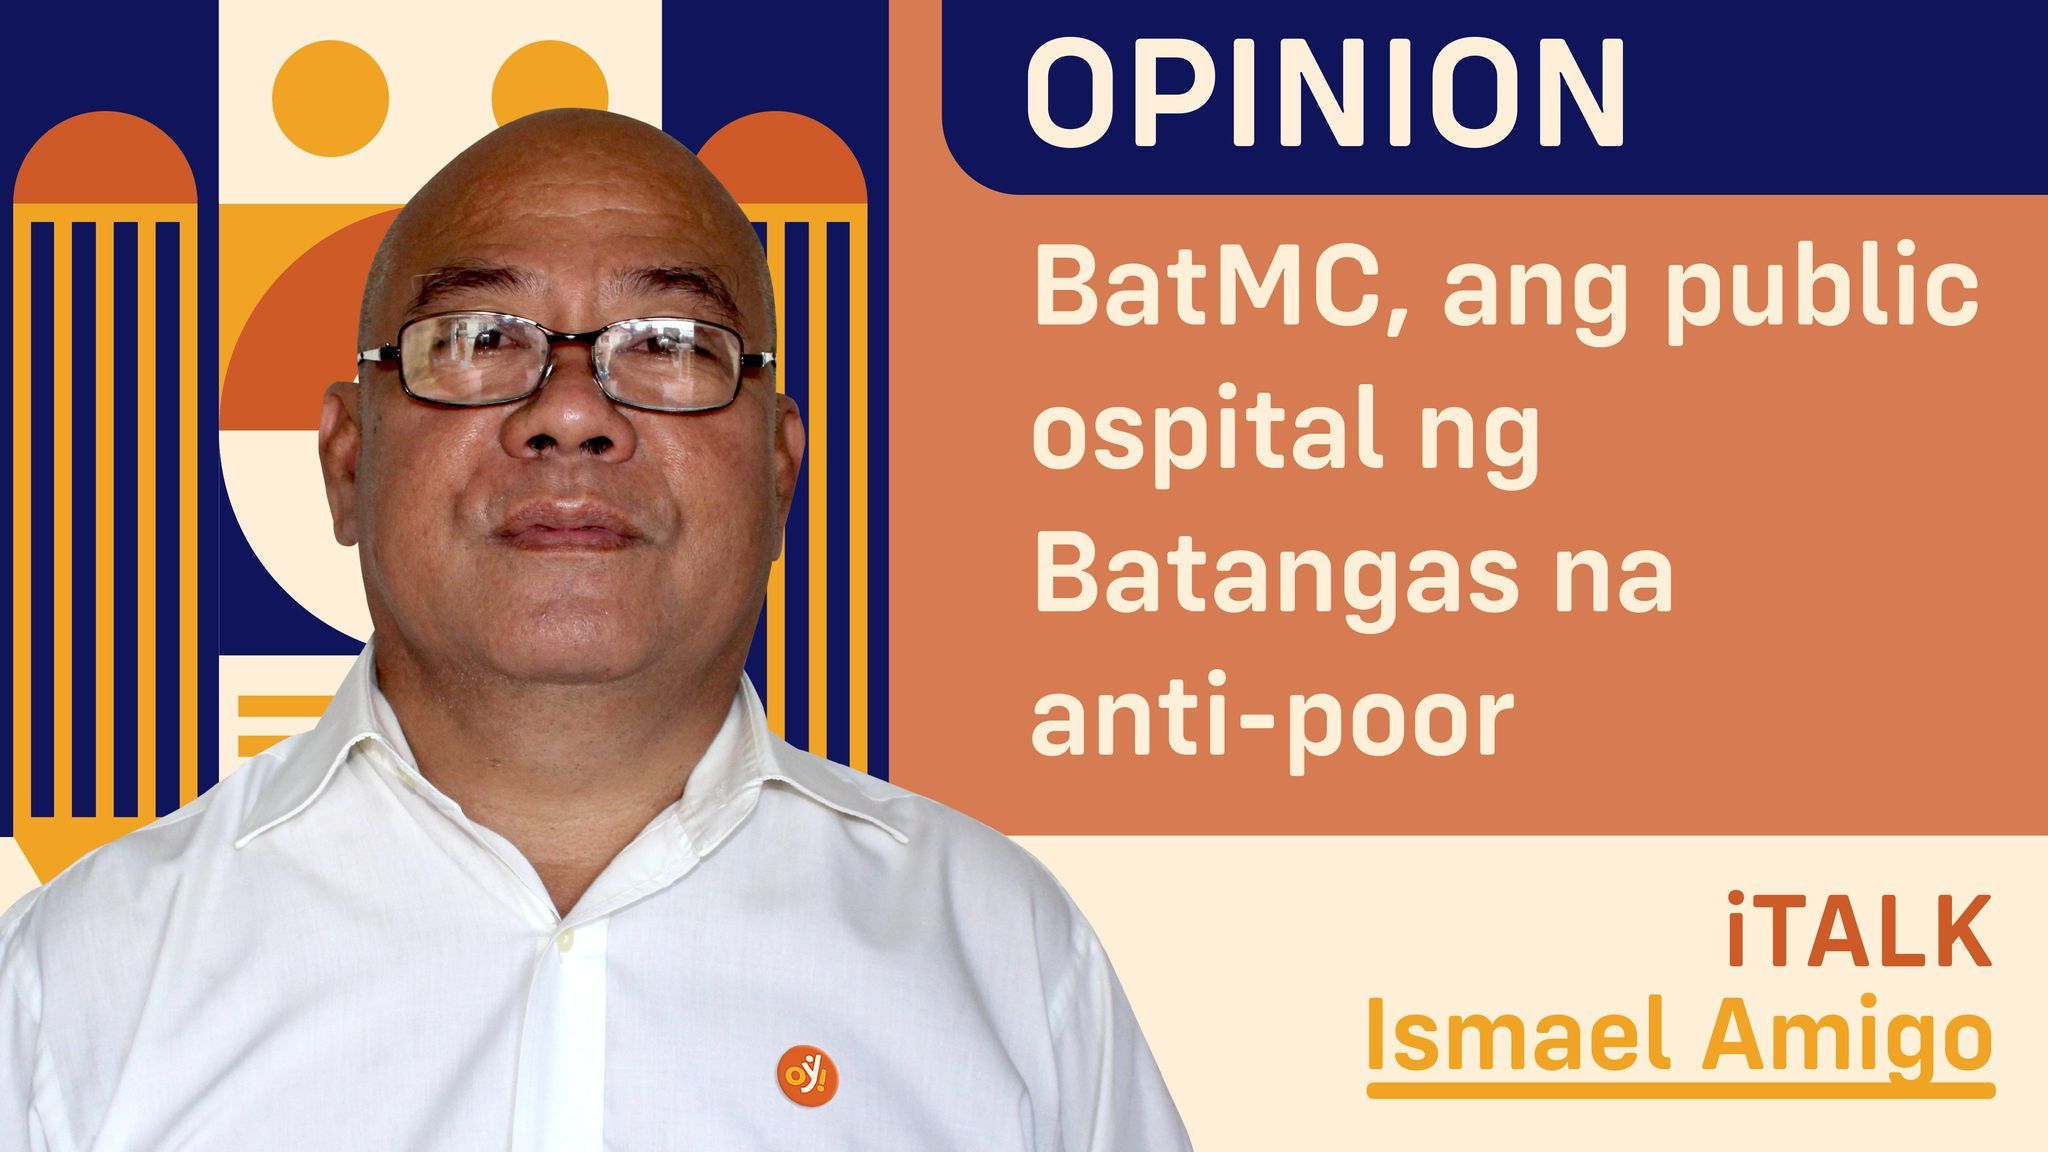 BatMC, ang public ospital ng Batangas na anti-poor